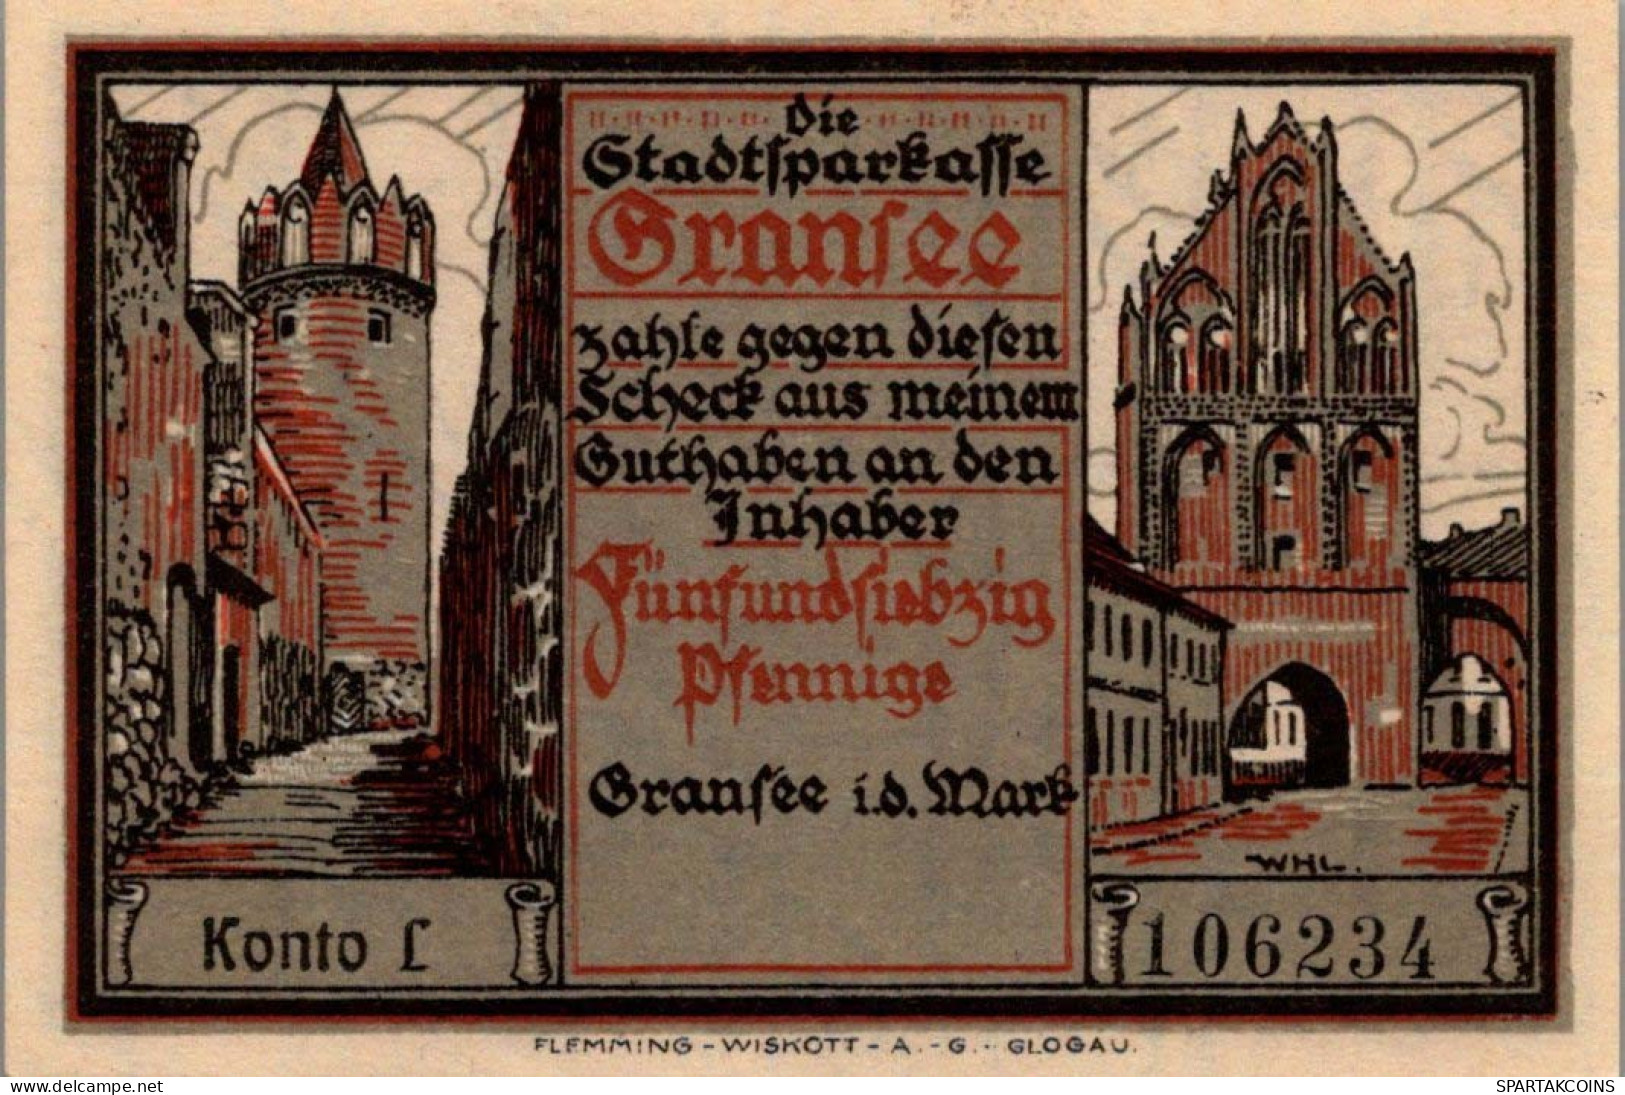 75 PFENNIG 1921 Stadt GRANSEE Brandenburg UNC DEUTSCHLAND Notgeld #PD042 - [11] Local Banknote Issues